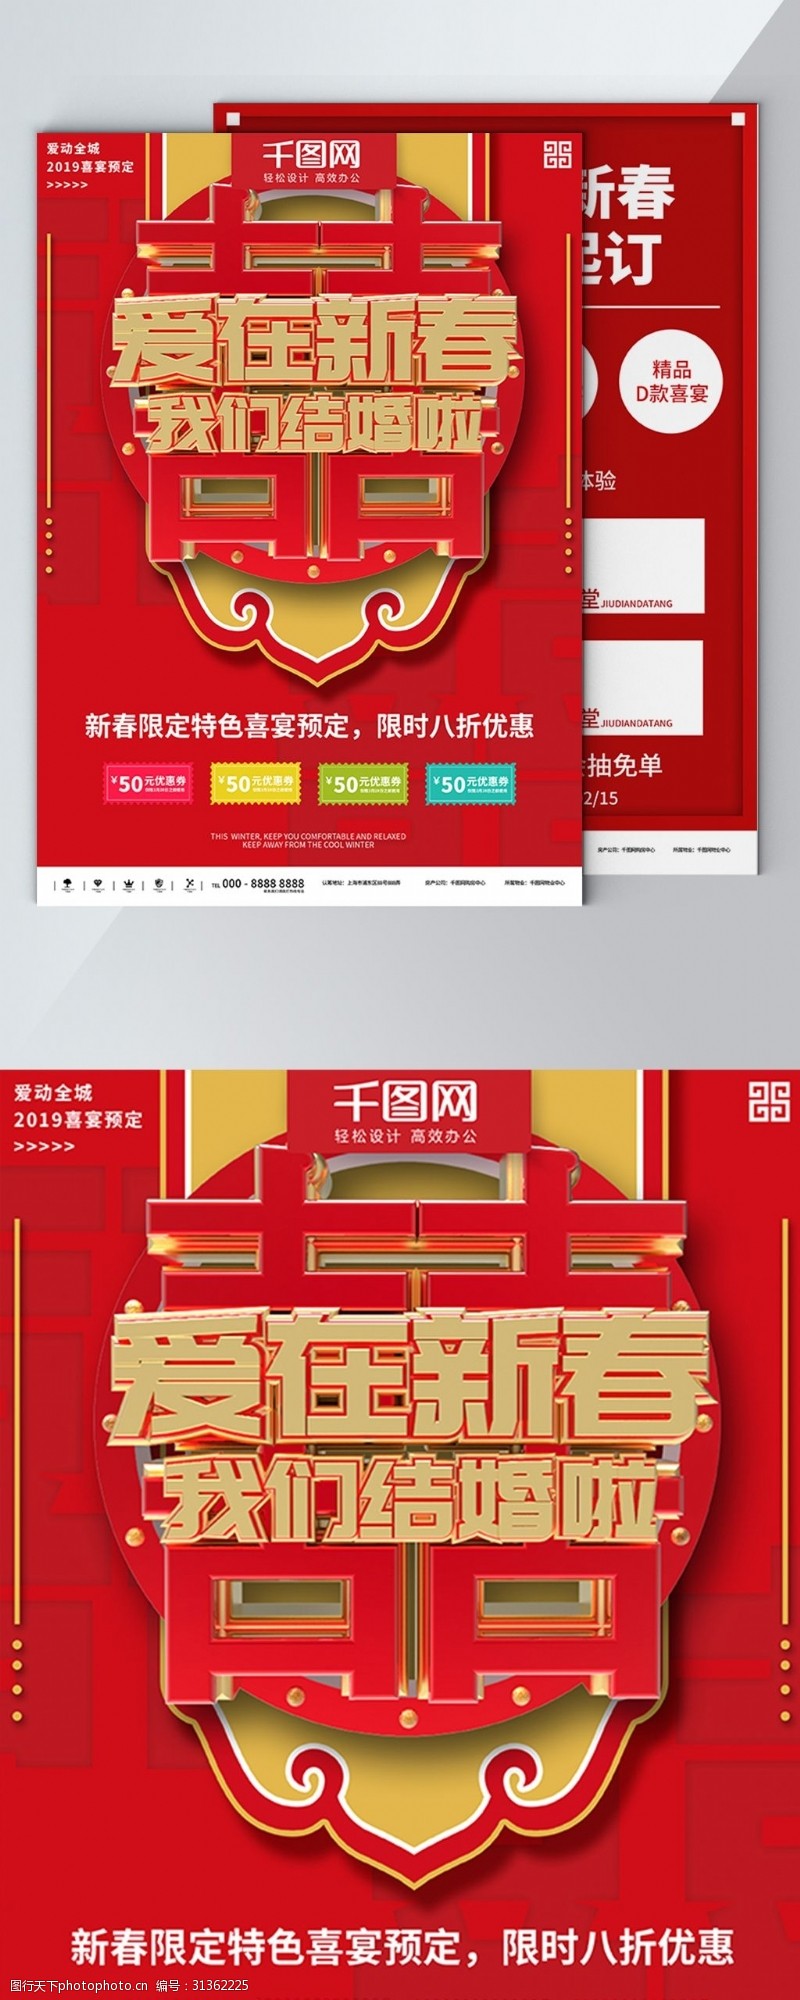 预约年饭红色2019爱在新春喜宴预定商业宣传海报